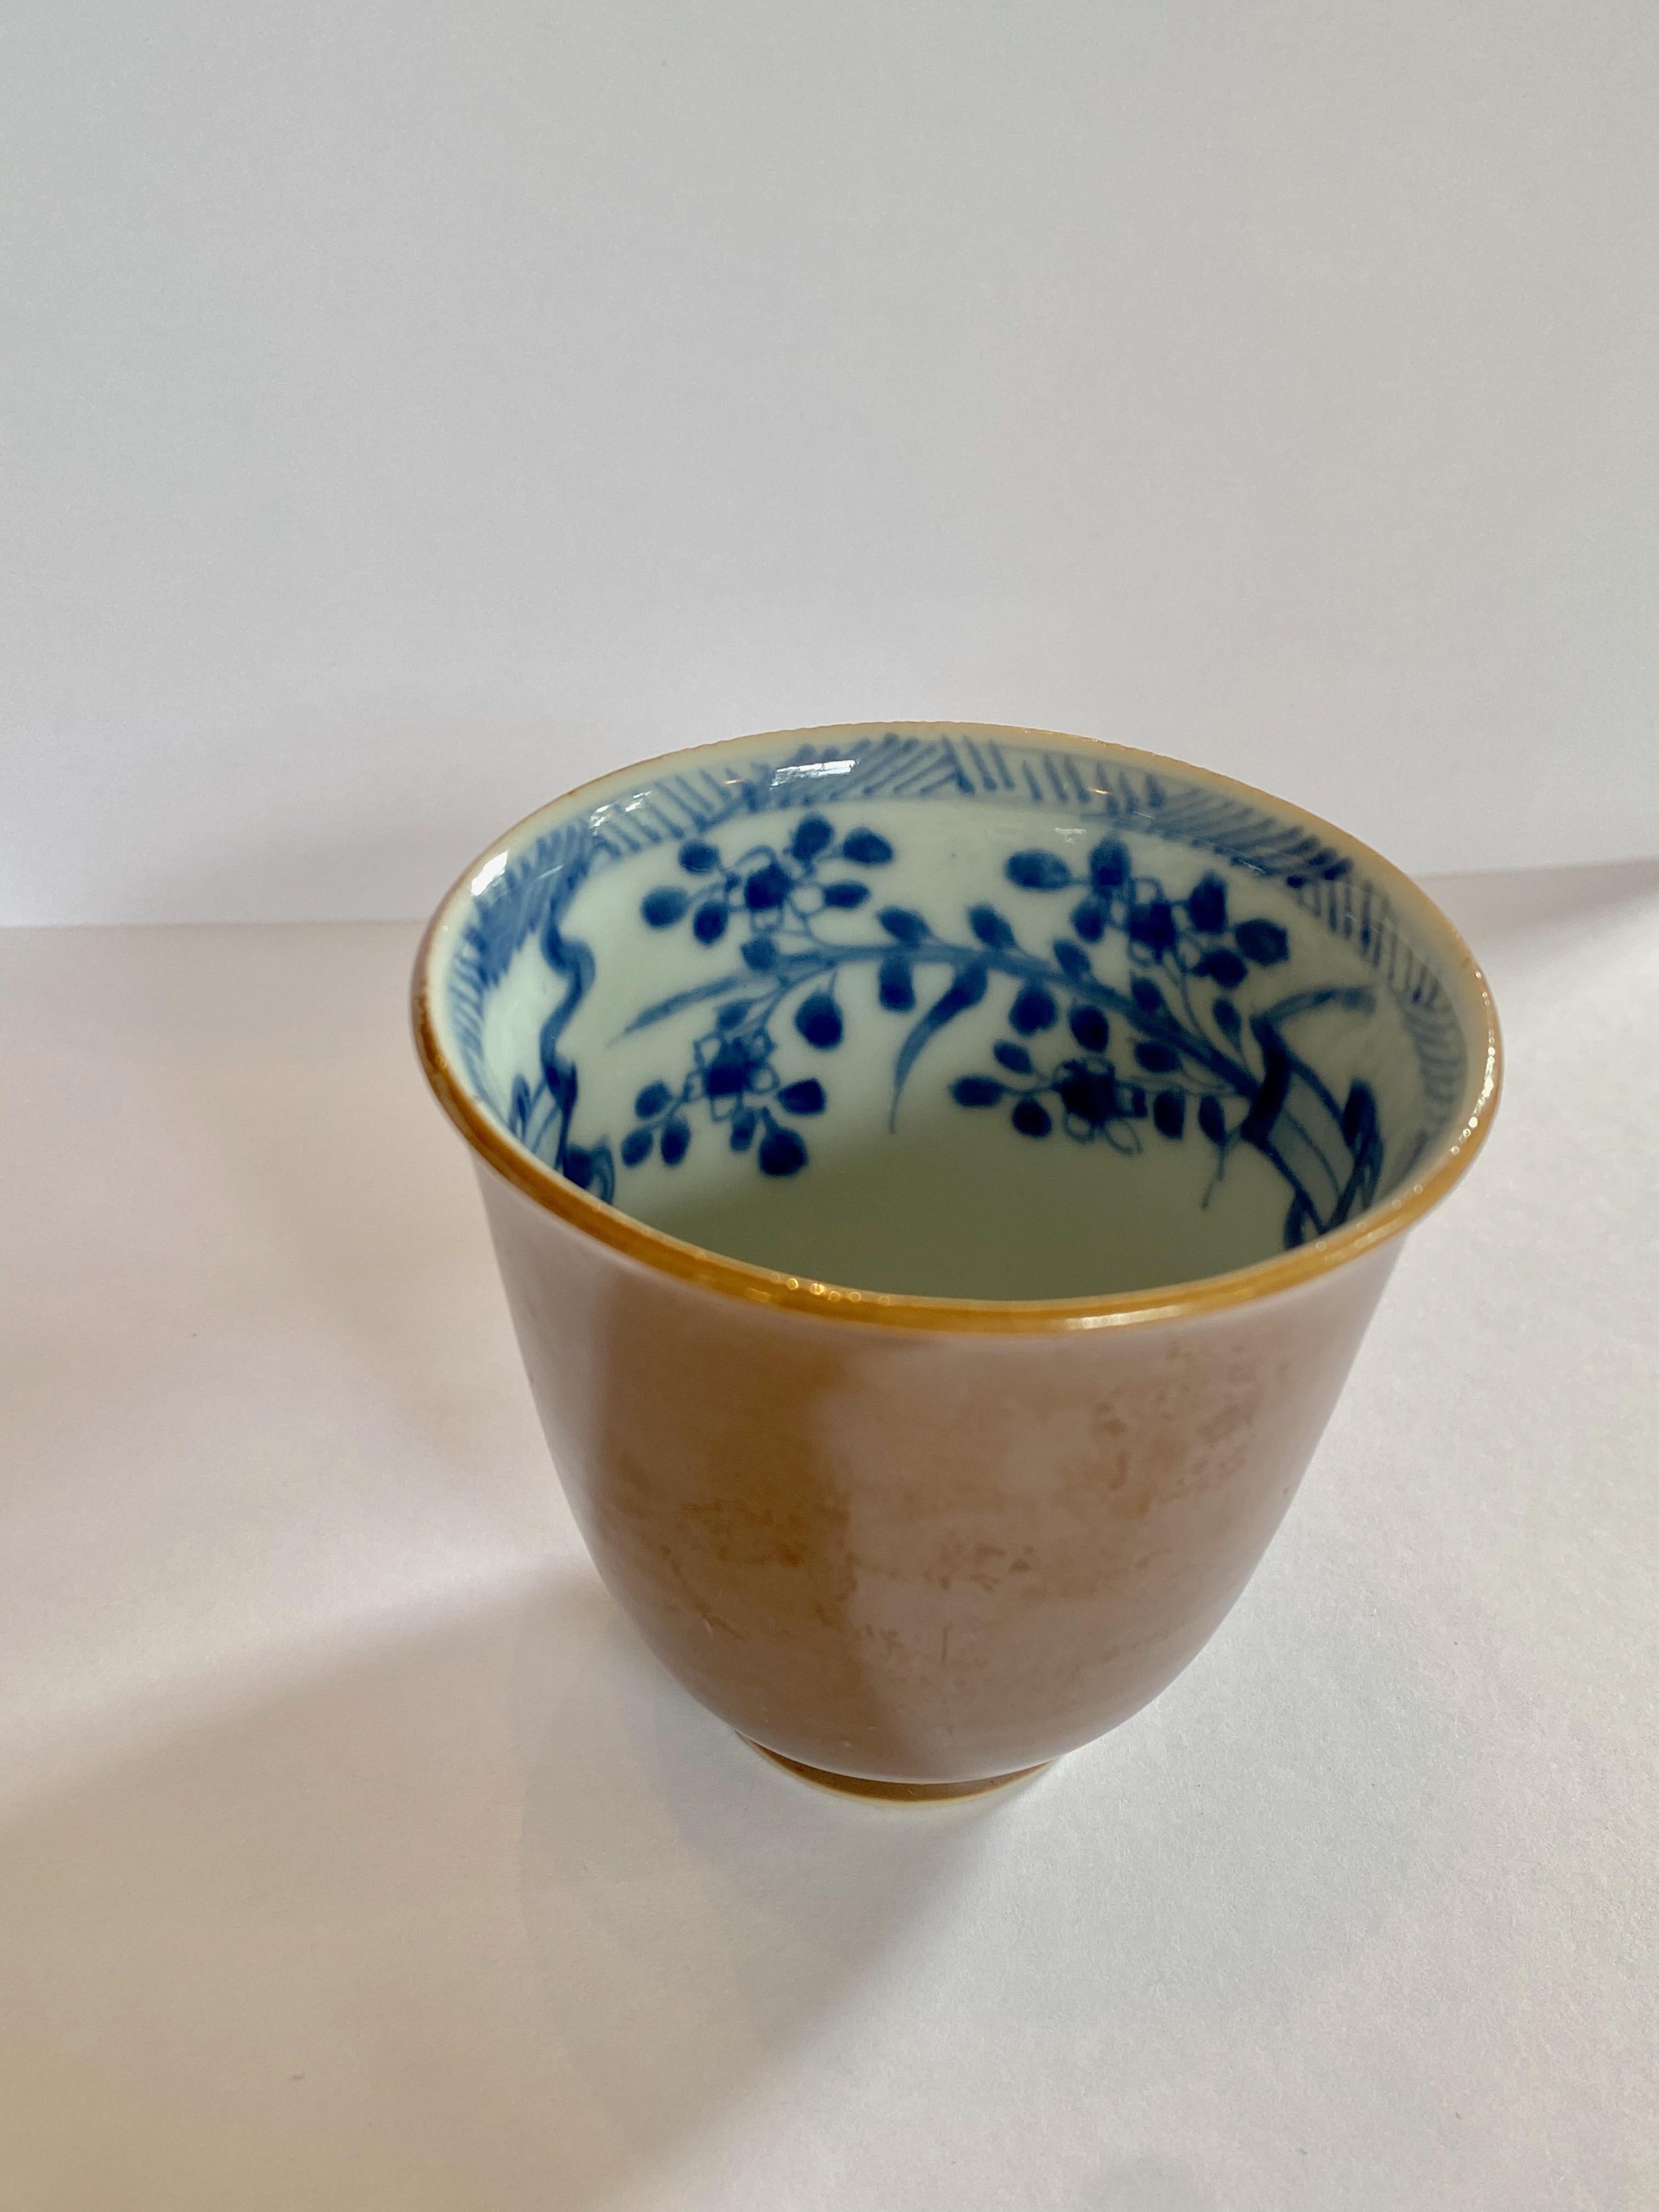 porzellantasse aus dem 18. Jahrhundert, Qianlong-Periode (1735-1796) der Qing-Dynastie. 
Diese elegante Tasse hat eine fast irisierende hellbraune Außenglasur und eine blau-weiße Innenseite, die mit Bändern und Blumen verziert ist, was einen